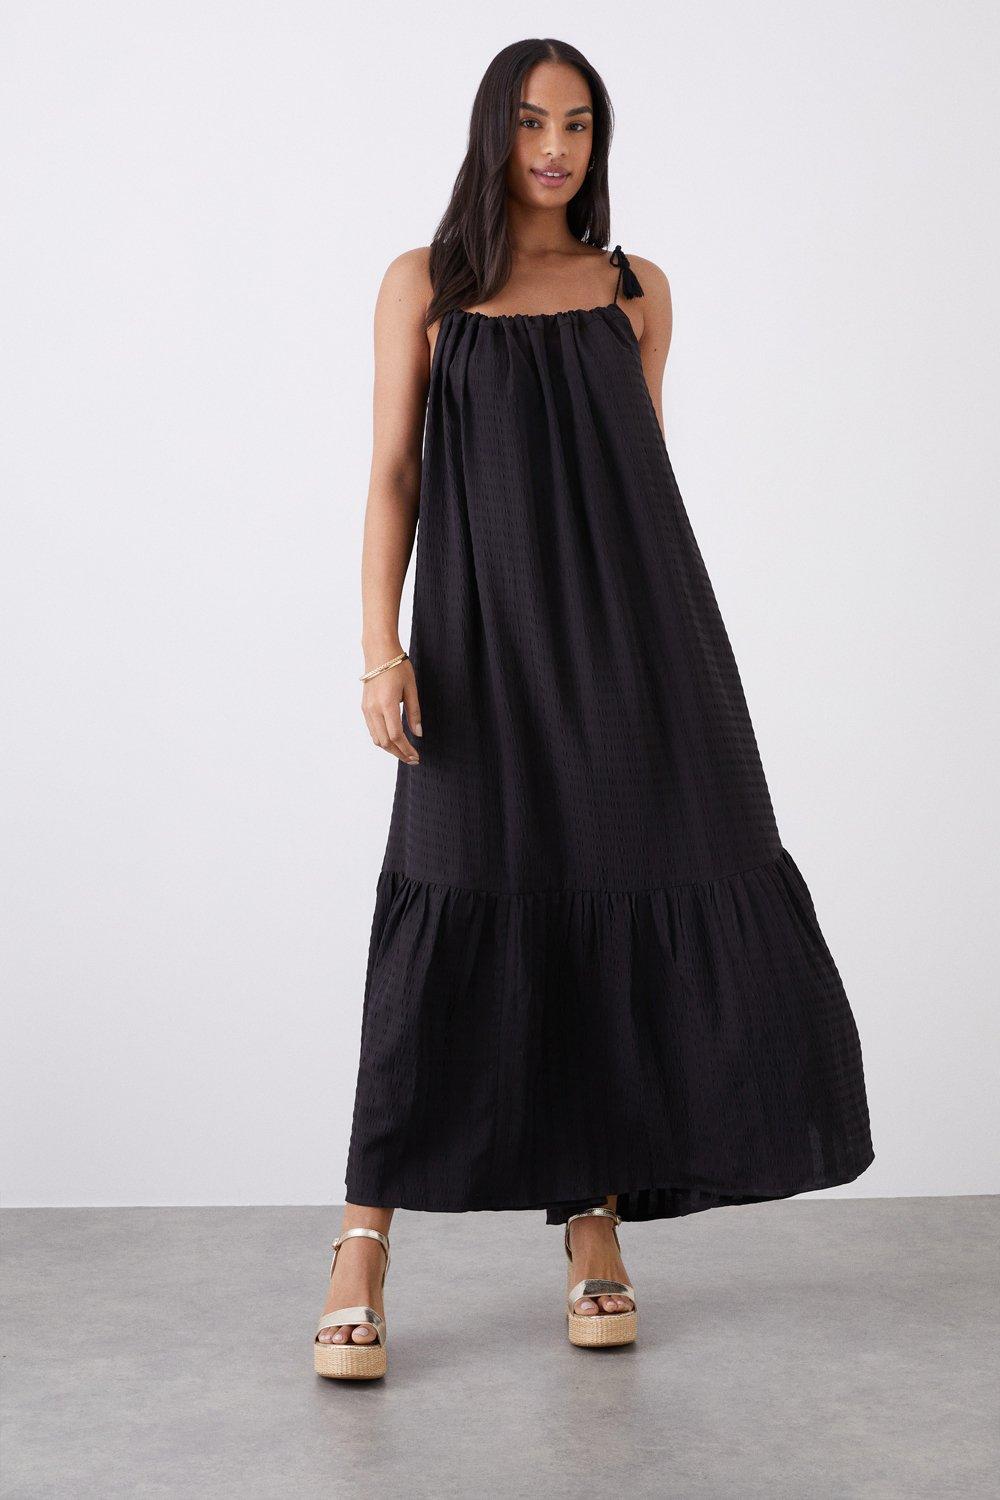 Women’s Maxi Tassel Detail Beach Dress - black - L